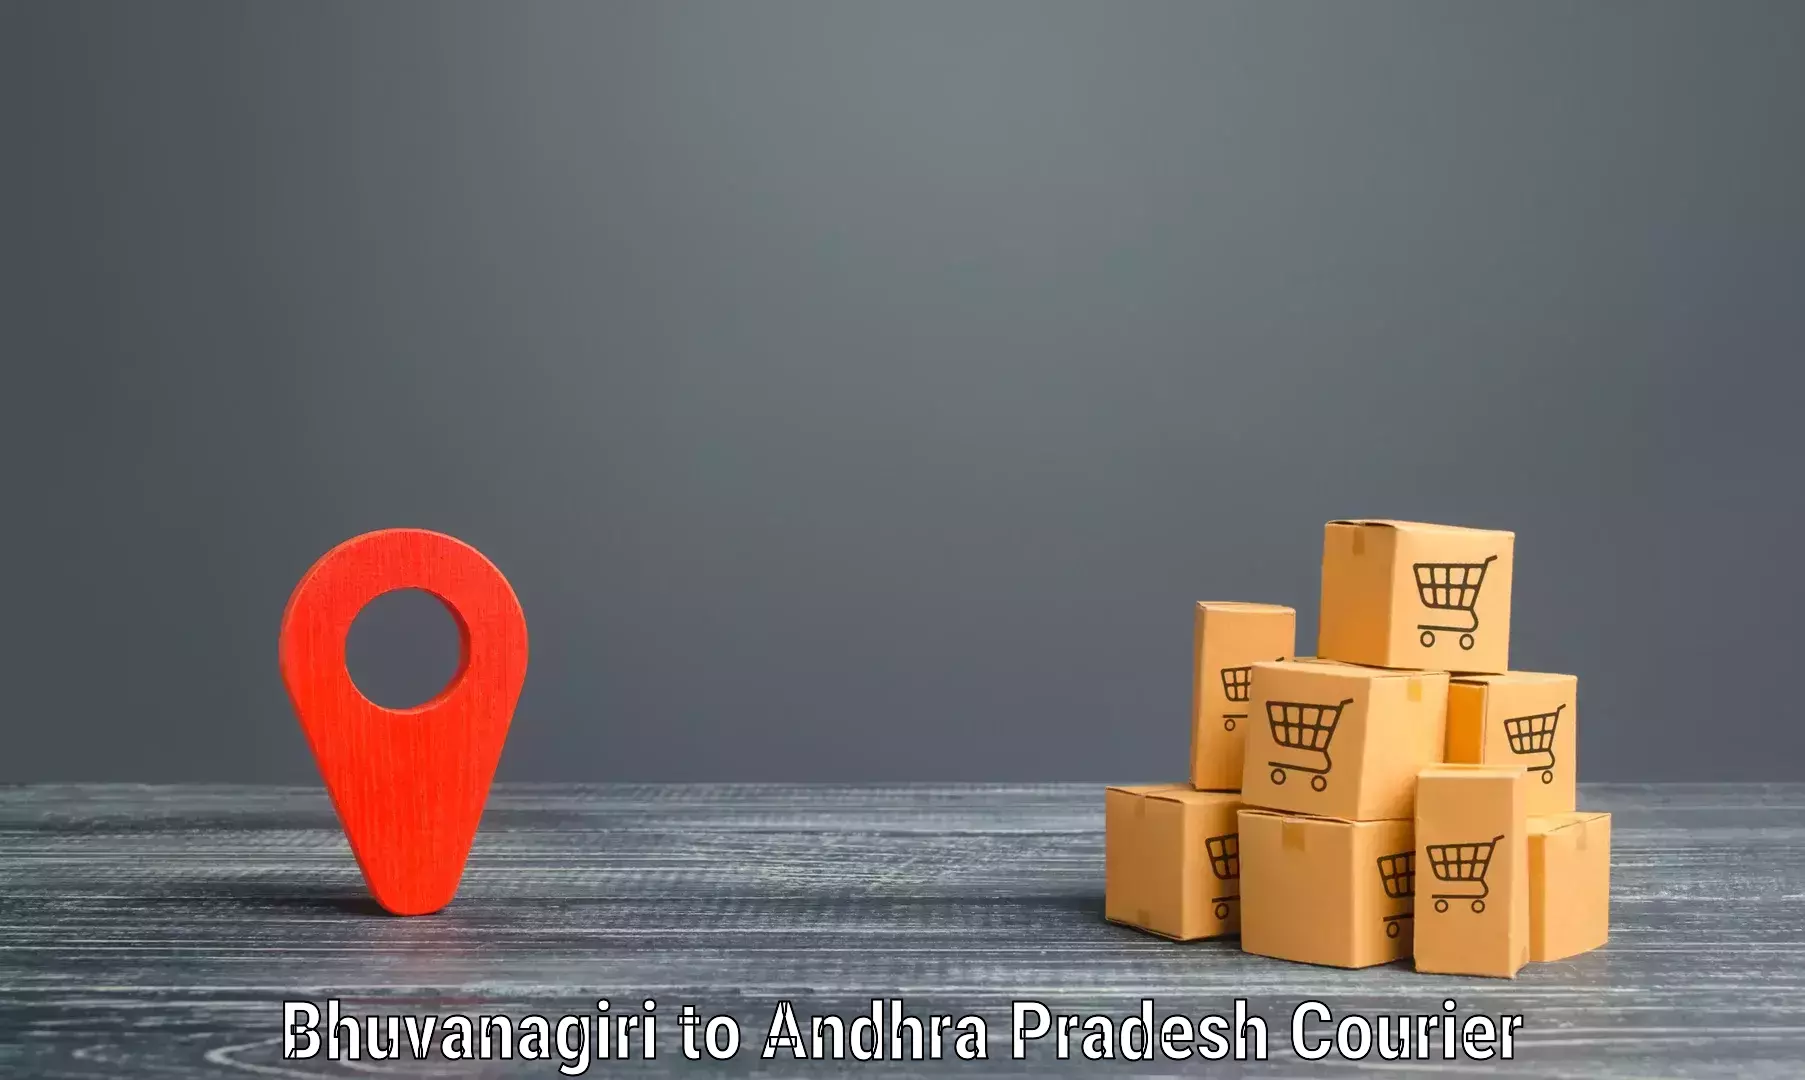 High-performance logistics Bhuvanagiri to Vuyyuru